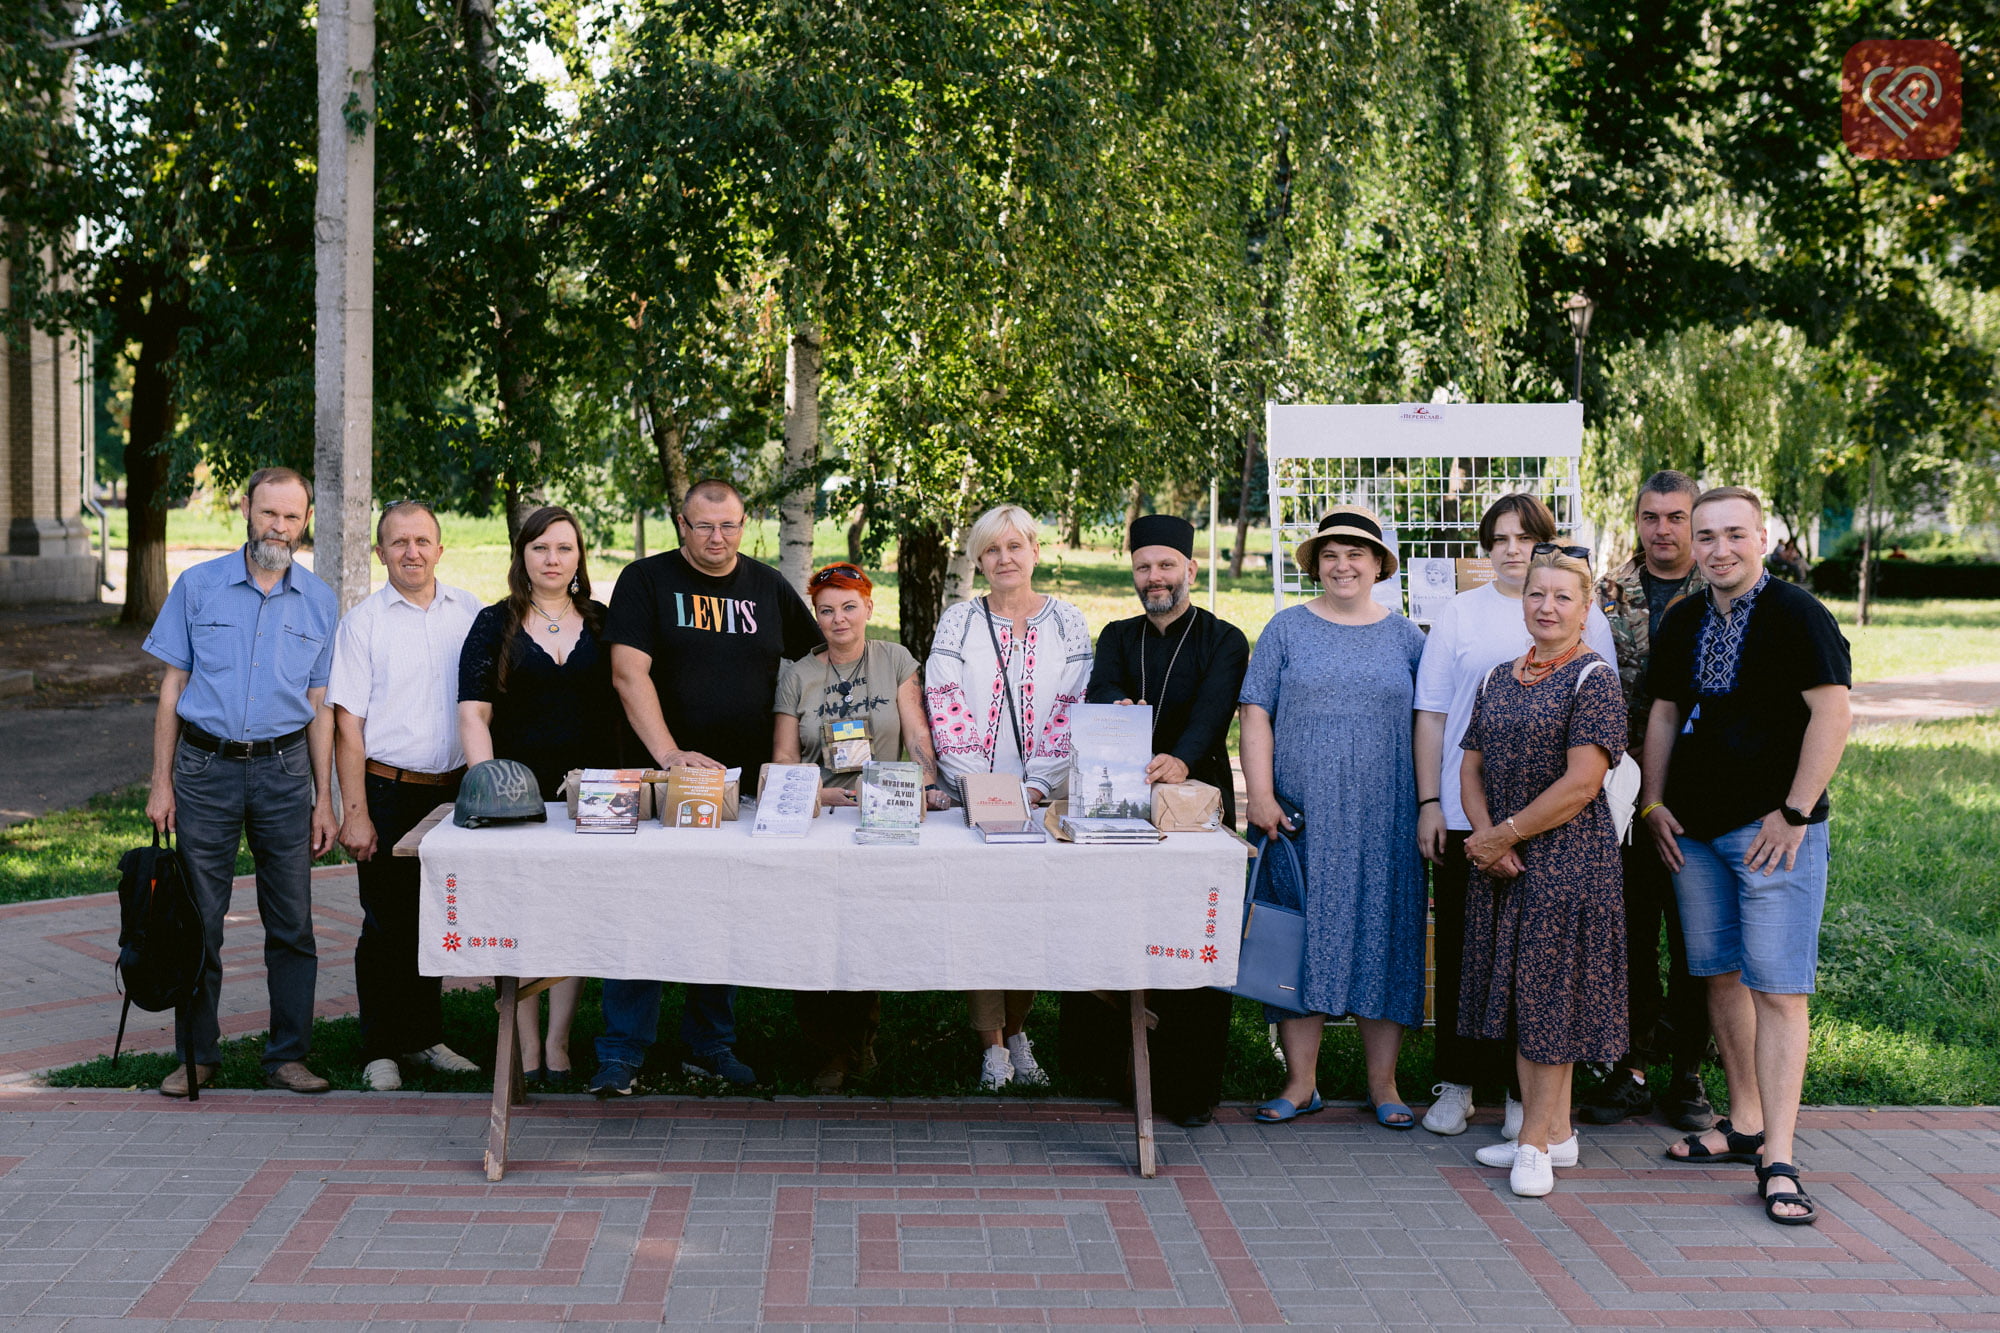 У суботу волонтери, митці, історики та музейники міста об’єдналися в серці Переяслава для допомоги Збройним Силам України – як це було